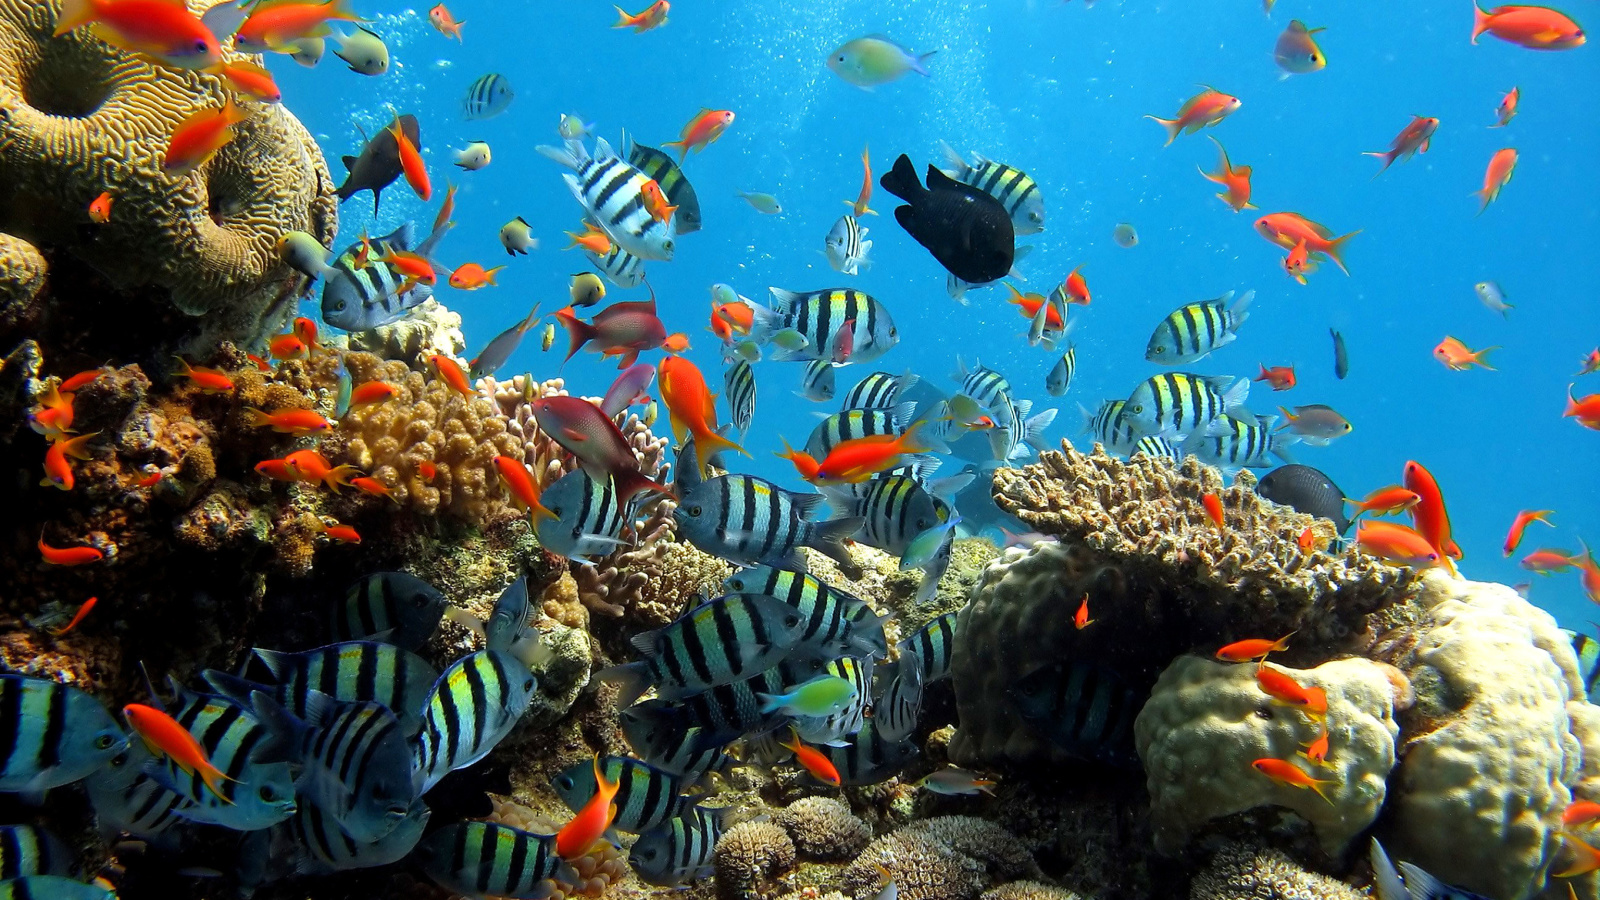 Thai seaworld with fish screenshot #1 1600x900